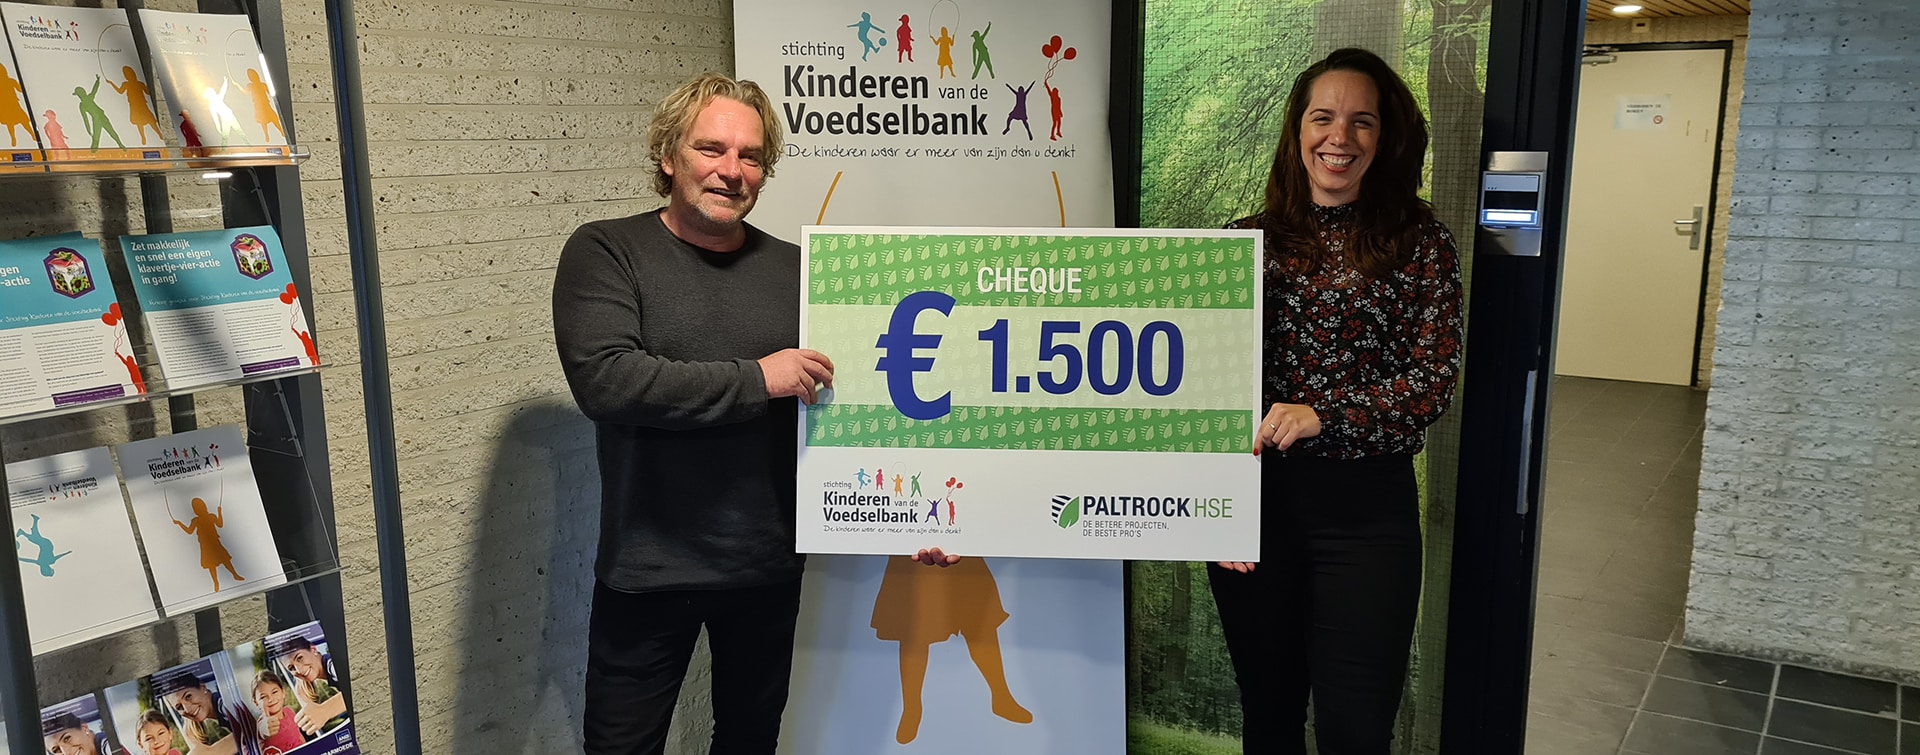 Kerstdonatie naar kinderenvandevoedselbank.nl